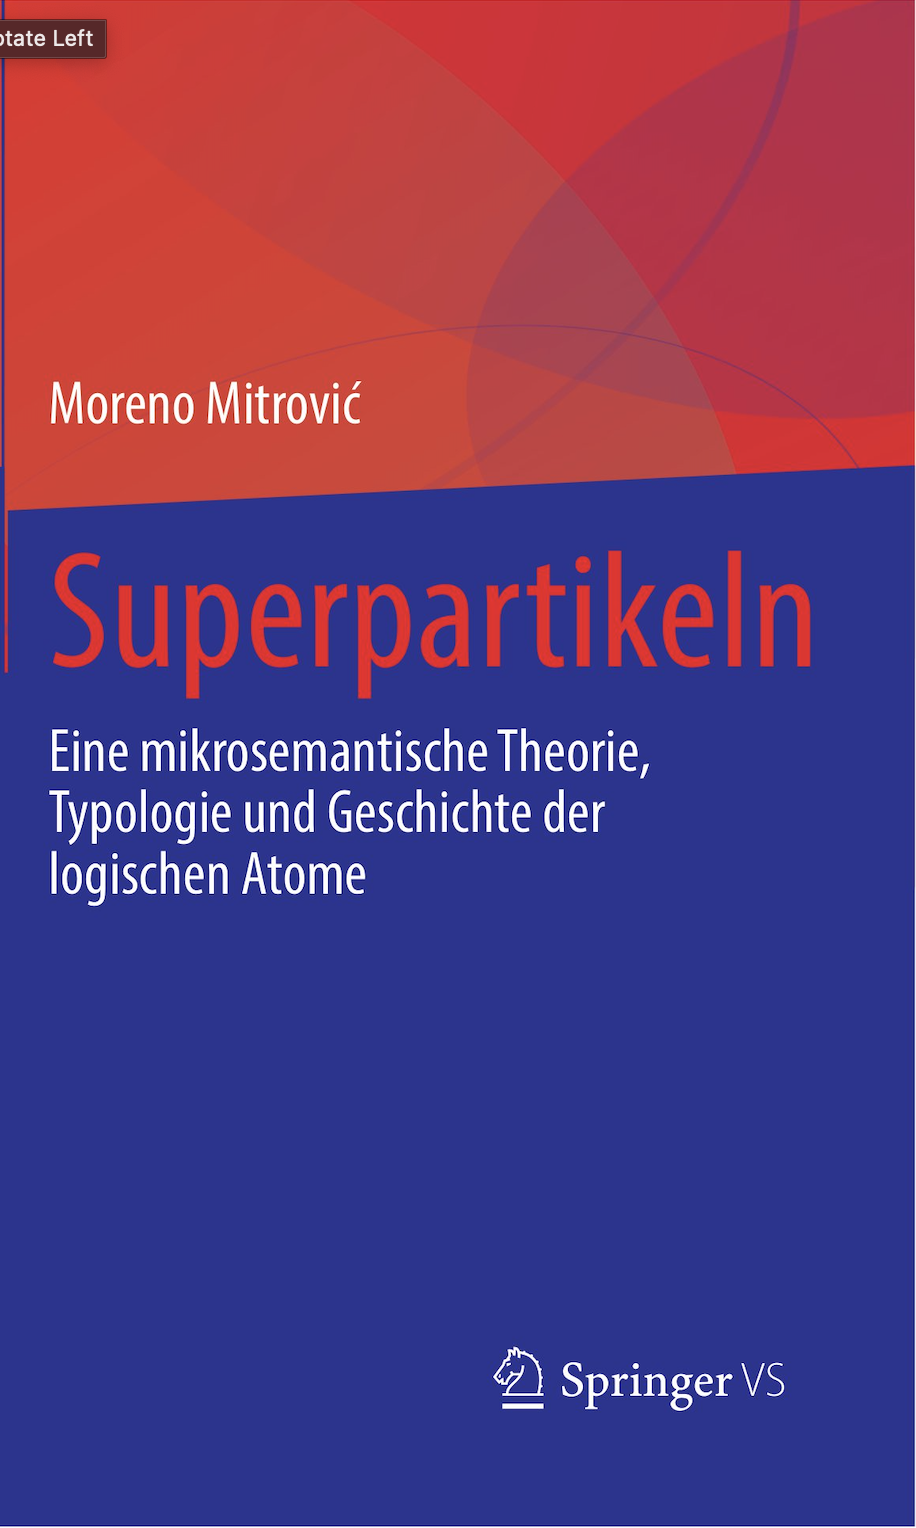 Superpartikeln: Eine mikrosemantische Theorie, Typologie und Geschichte der logischen Atome